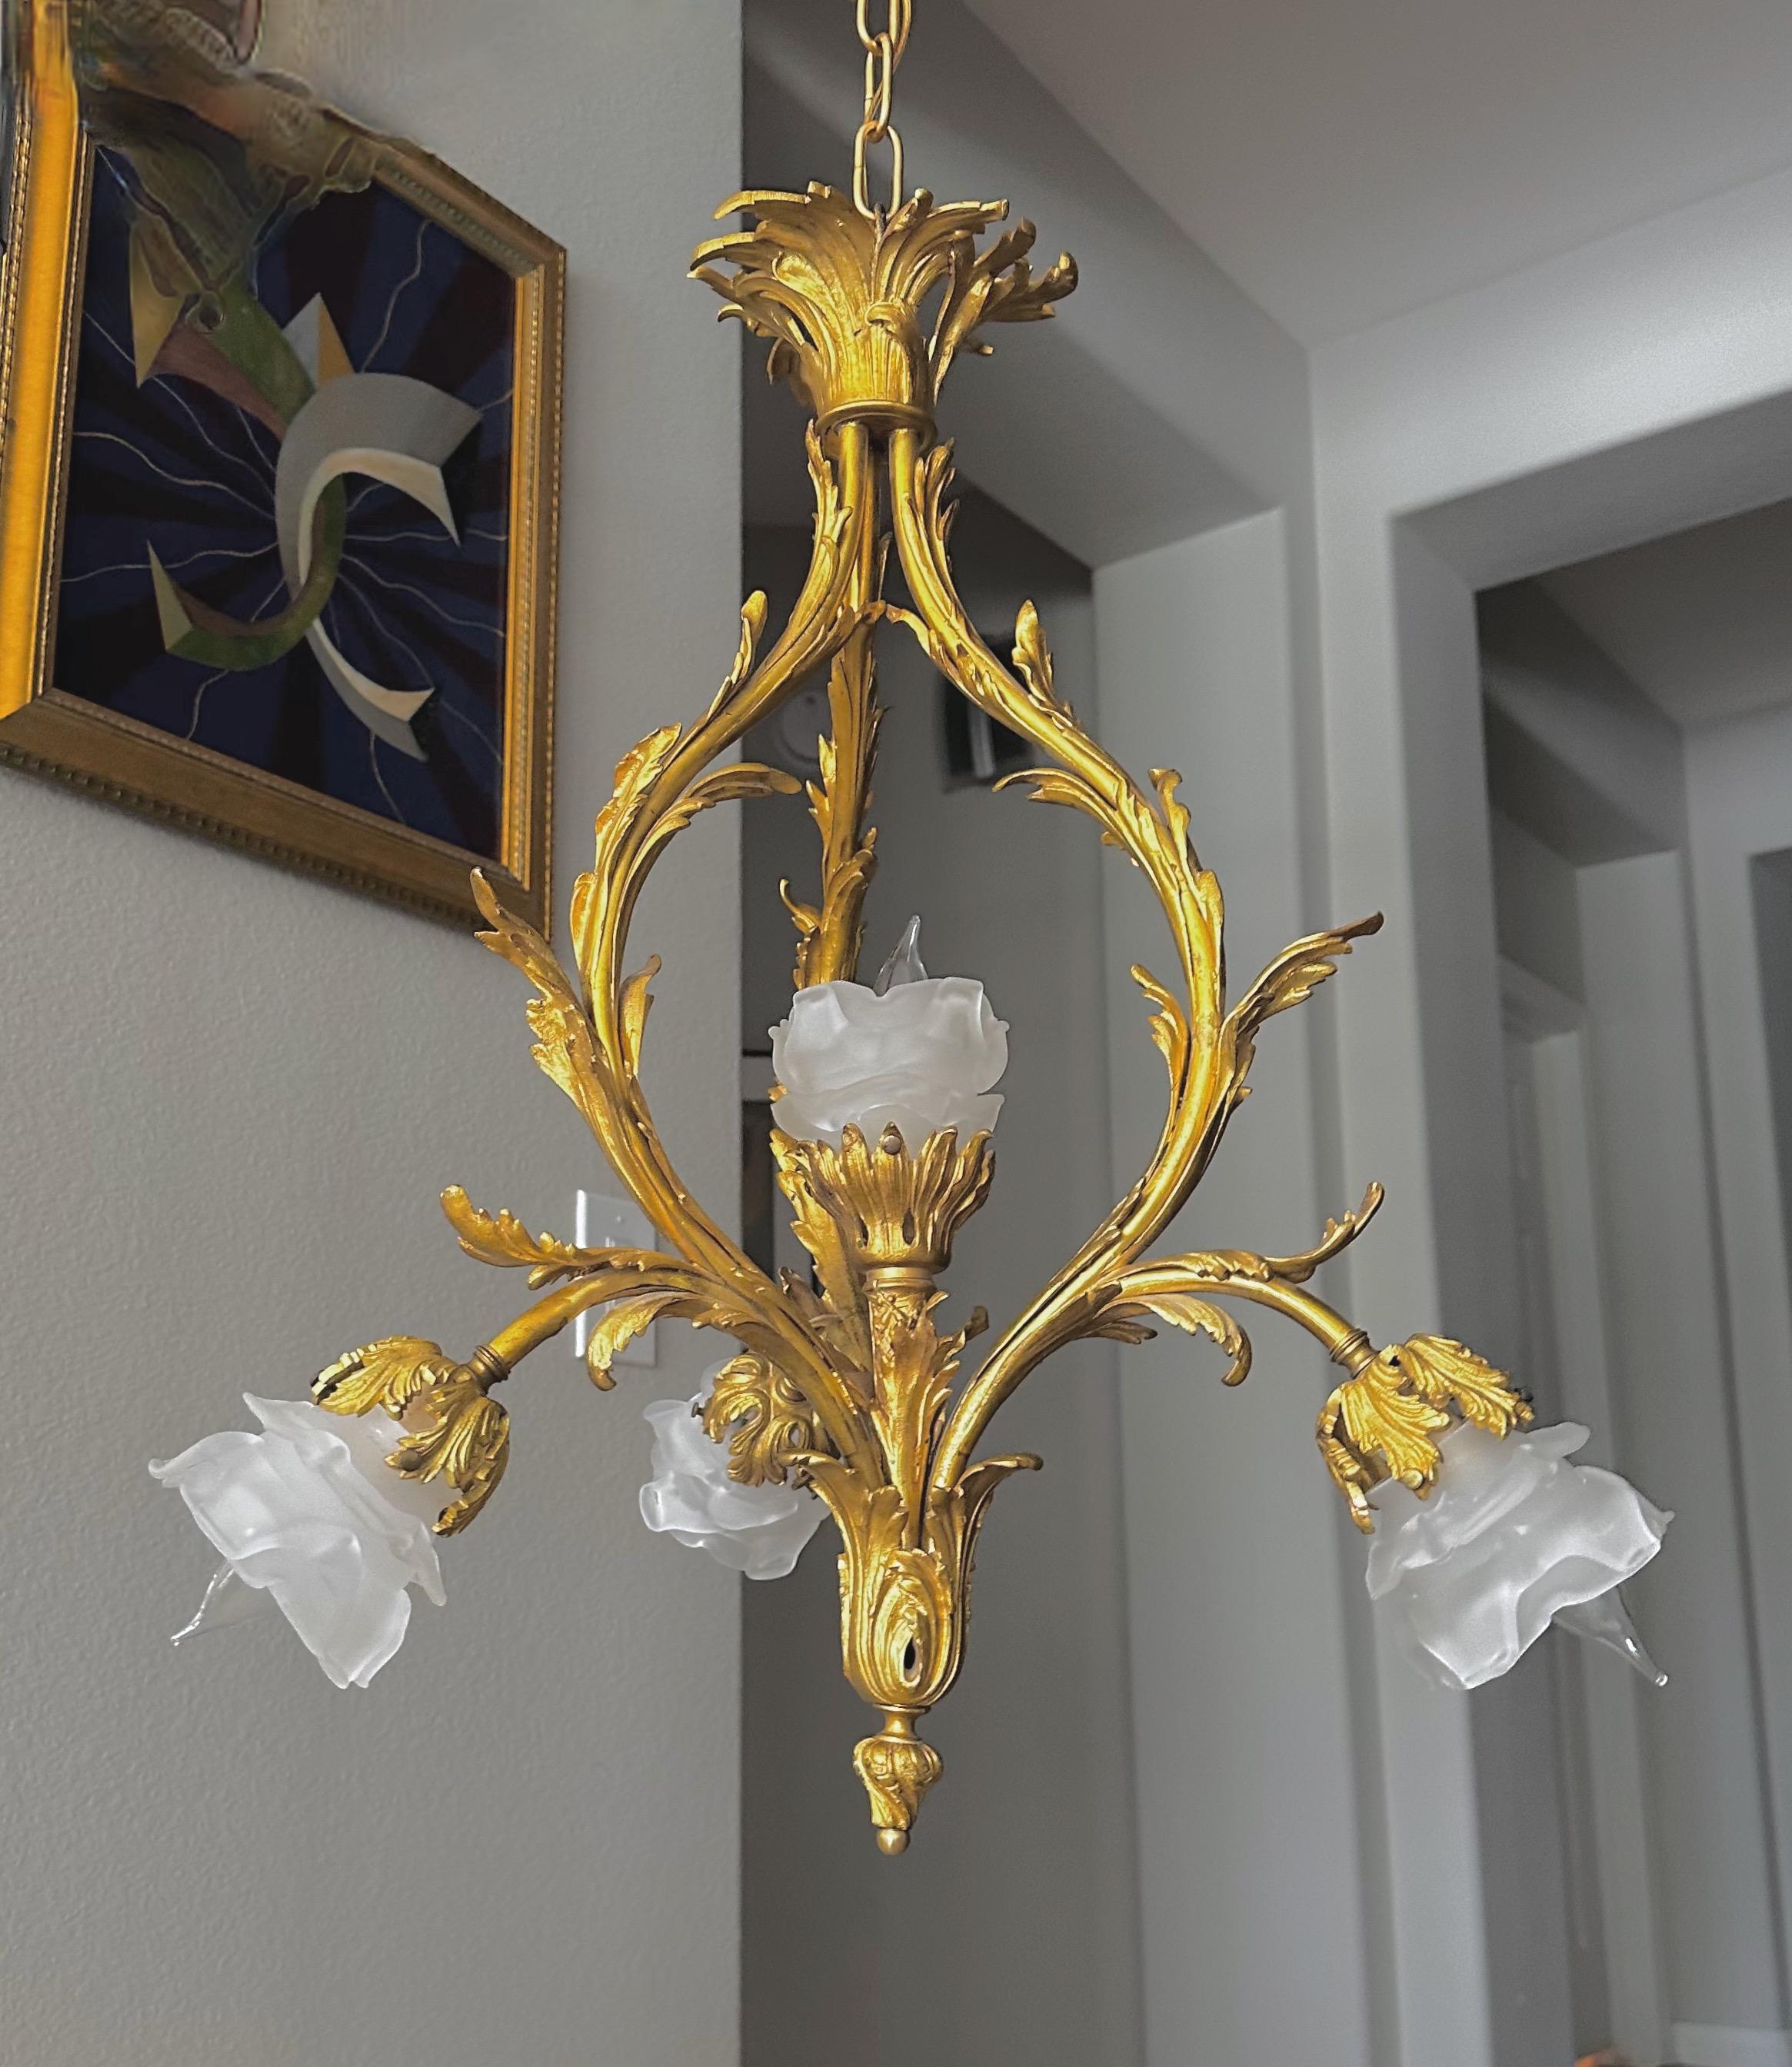 Pendentif ou lustre en bronze doré de style Louis XV, d'influence rococo. Abat-jour en verre dépoli en forme de bouton de rose sur 5 bras à volutes avec des détails feuillagés. Utilise 5 ampoules de taille candélabre, nouvellement câblées.